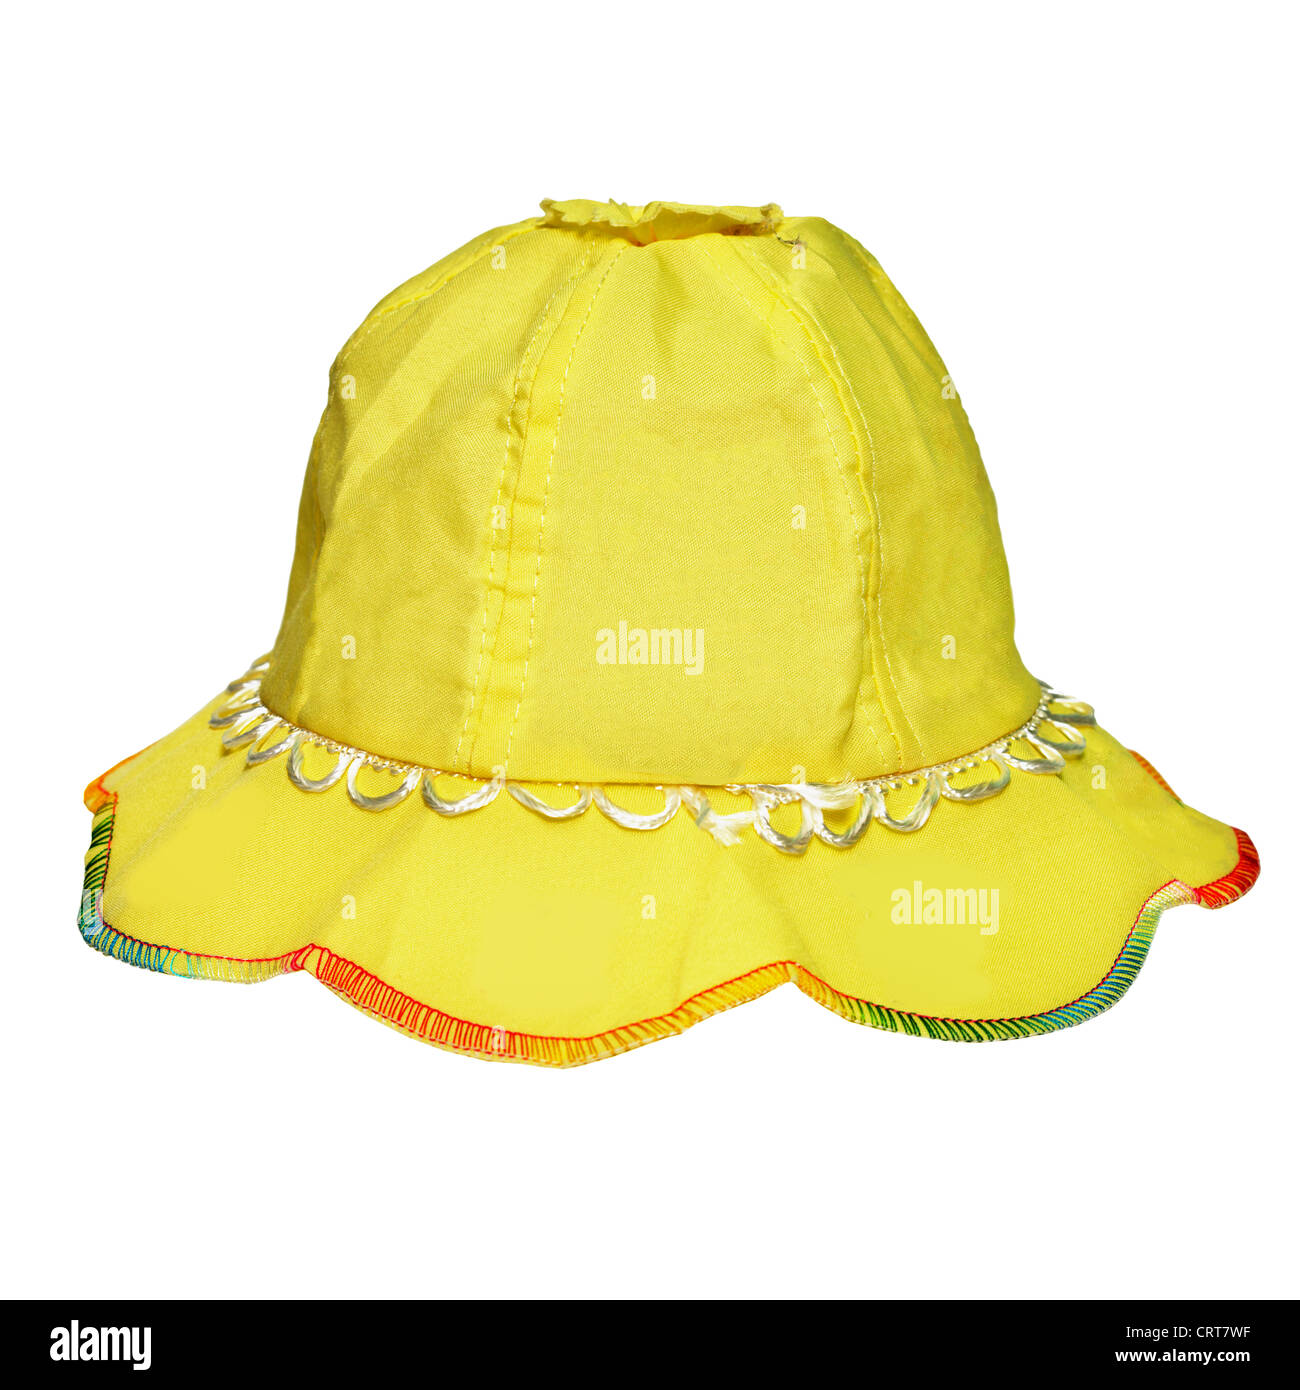 Enfant portant un chapeau de soleil Banque d'images détourées - Alamy